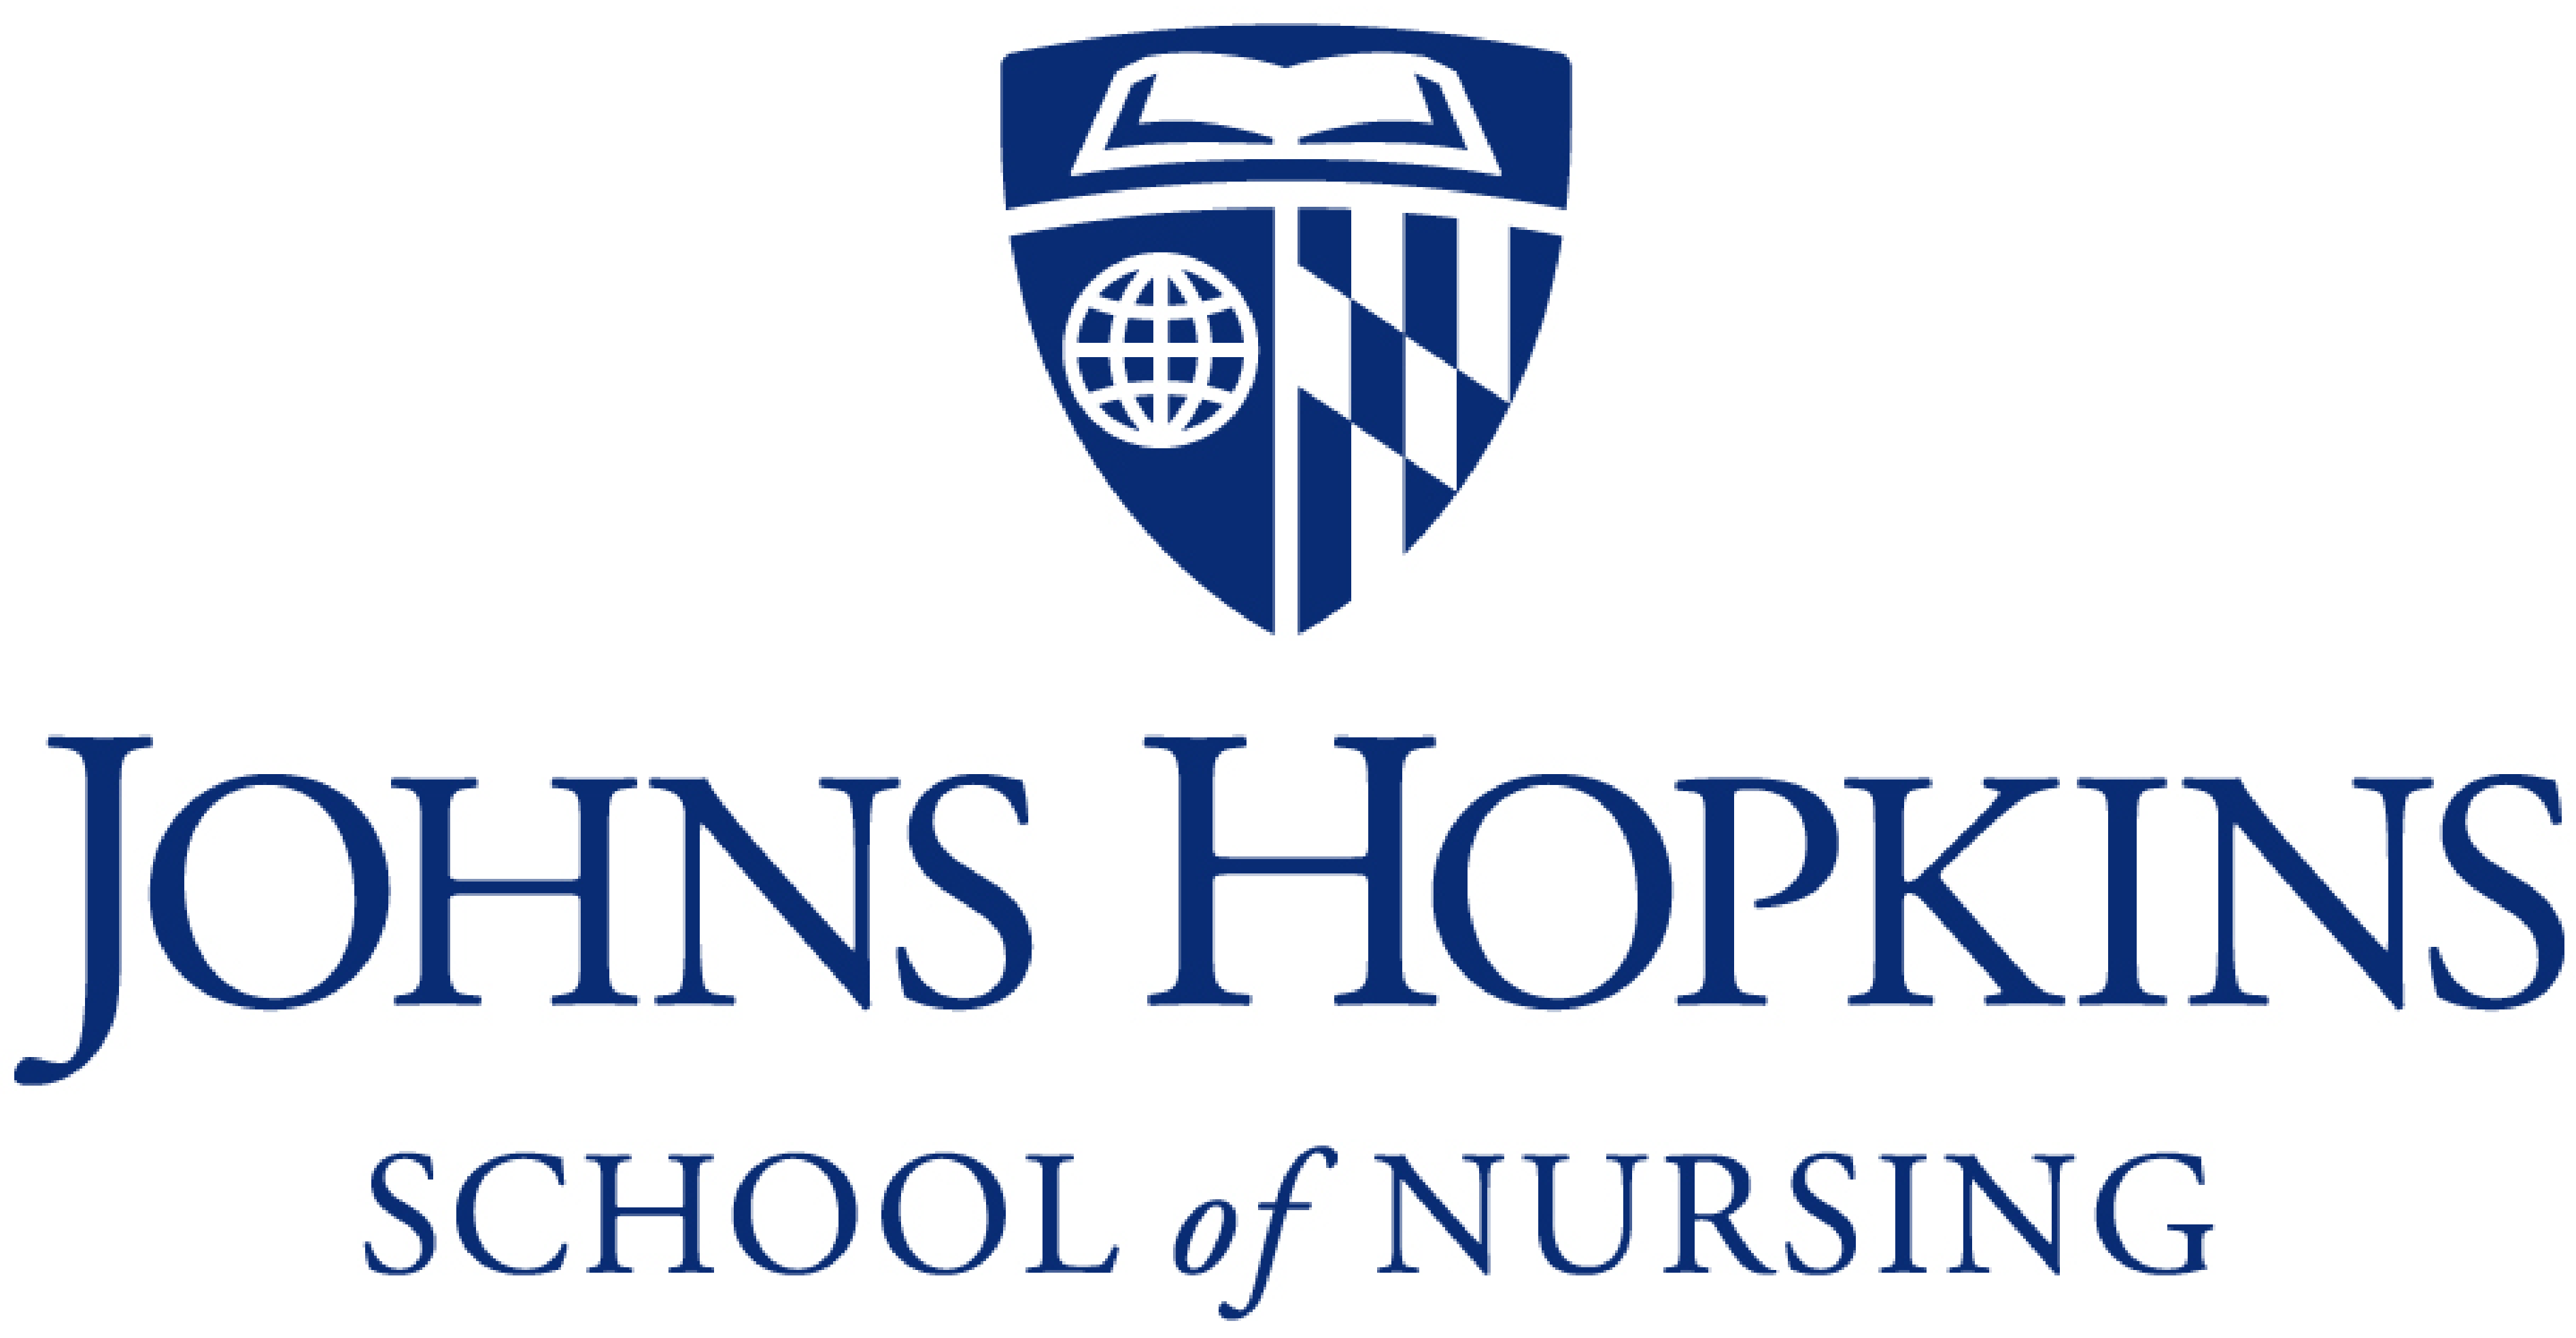 Johns Hopkins School of Nursing 